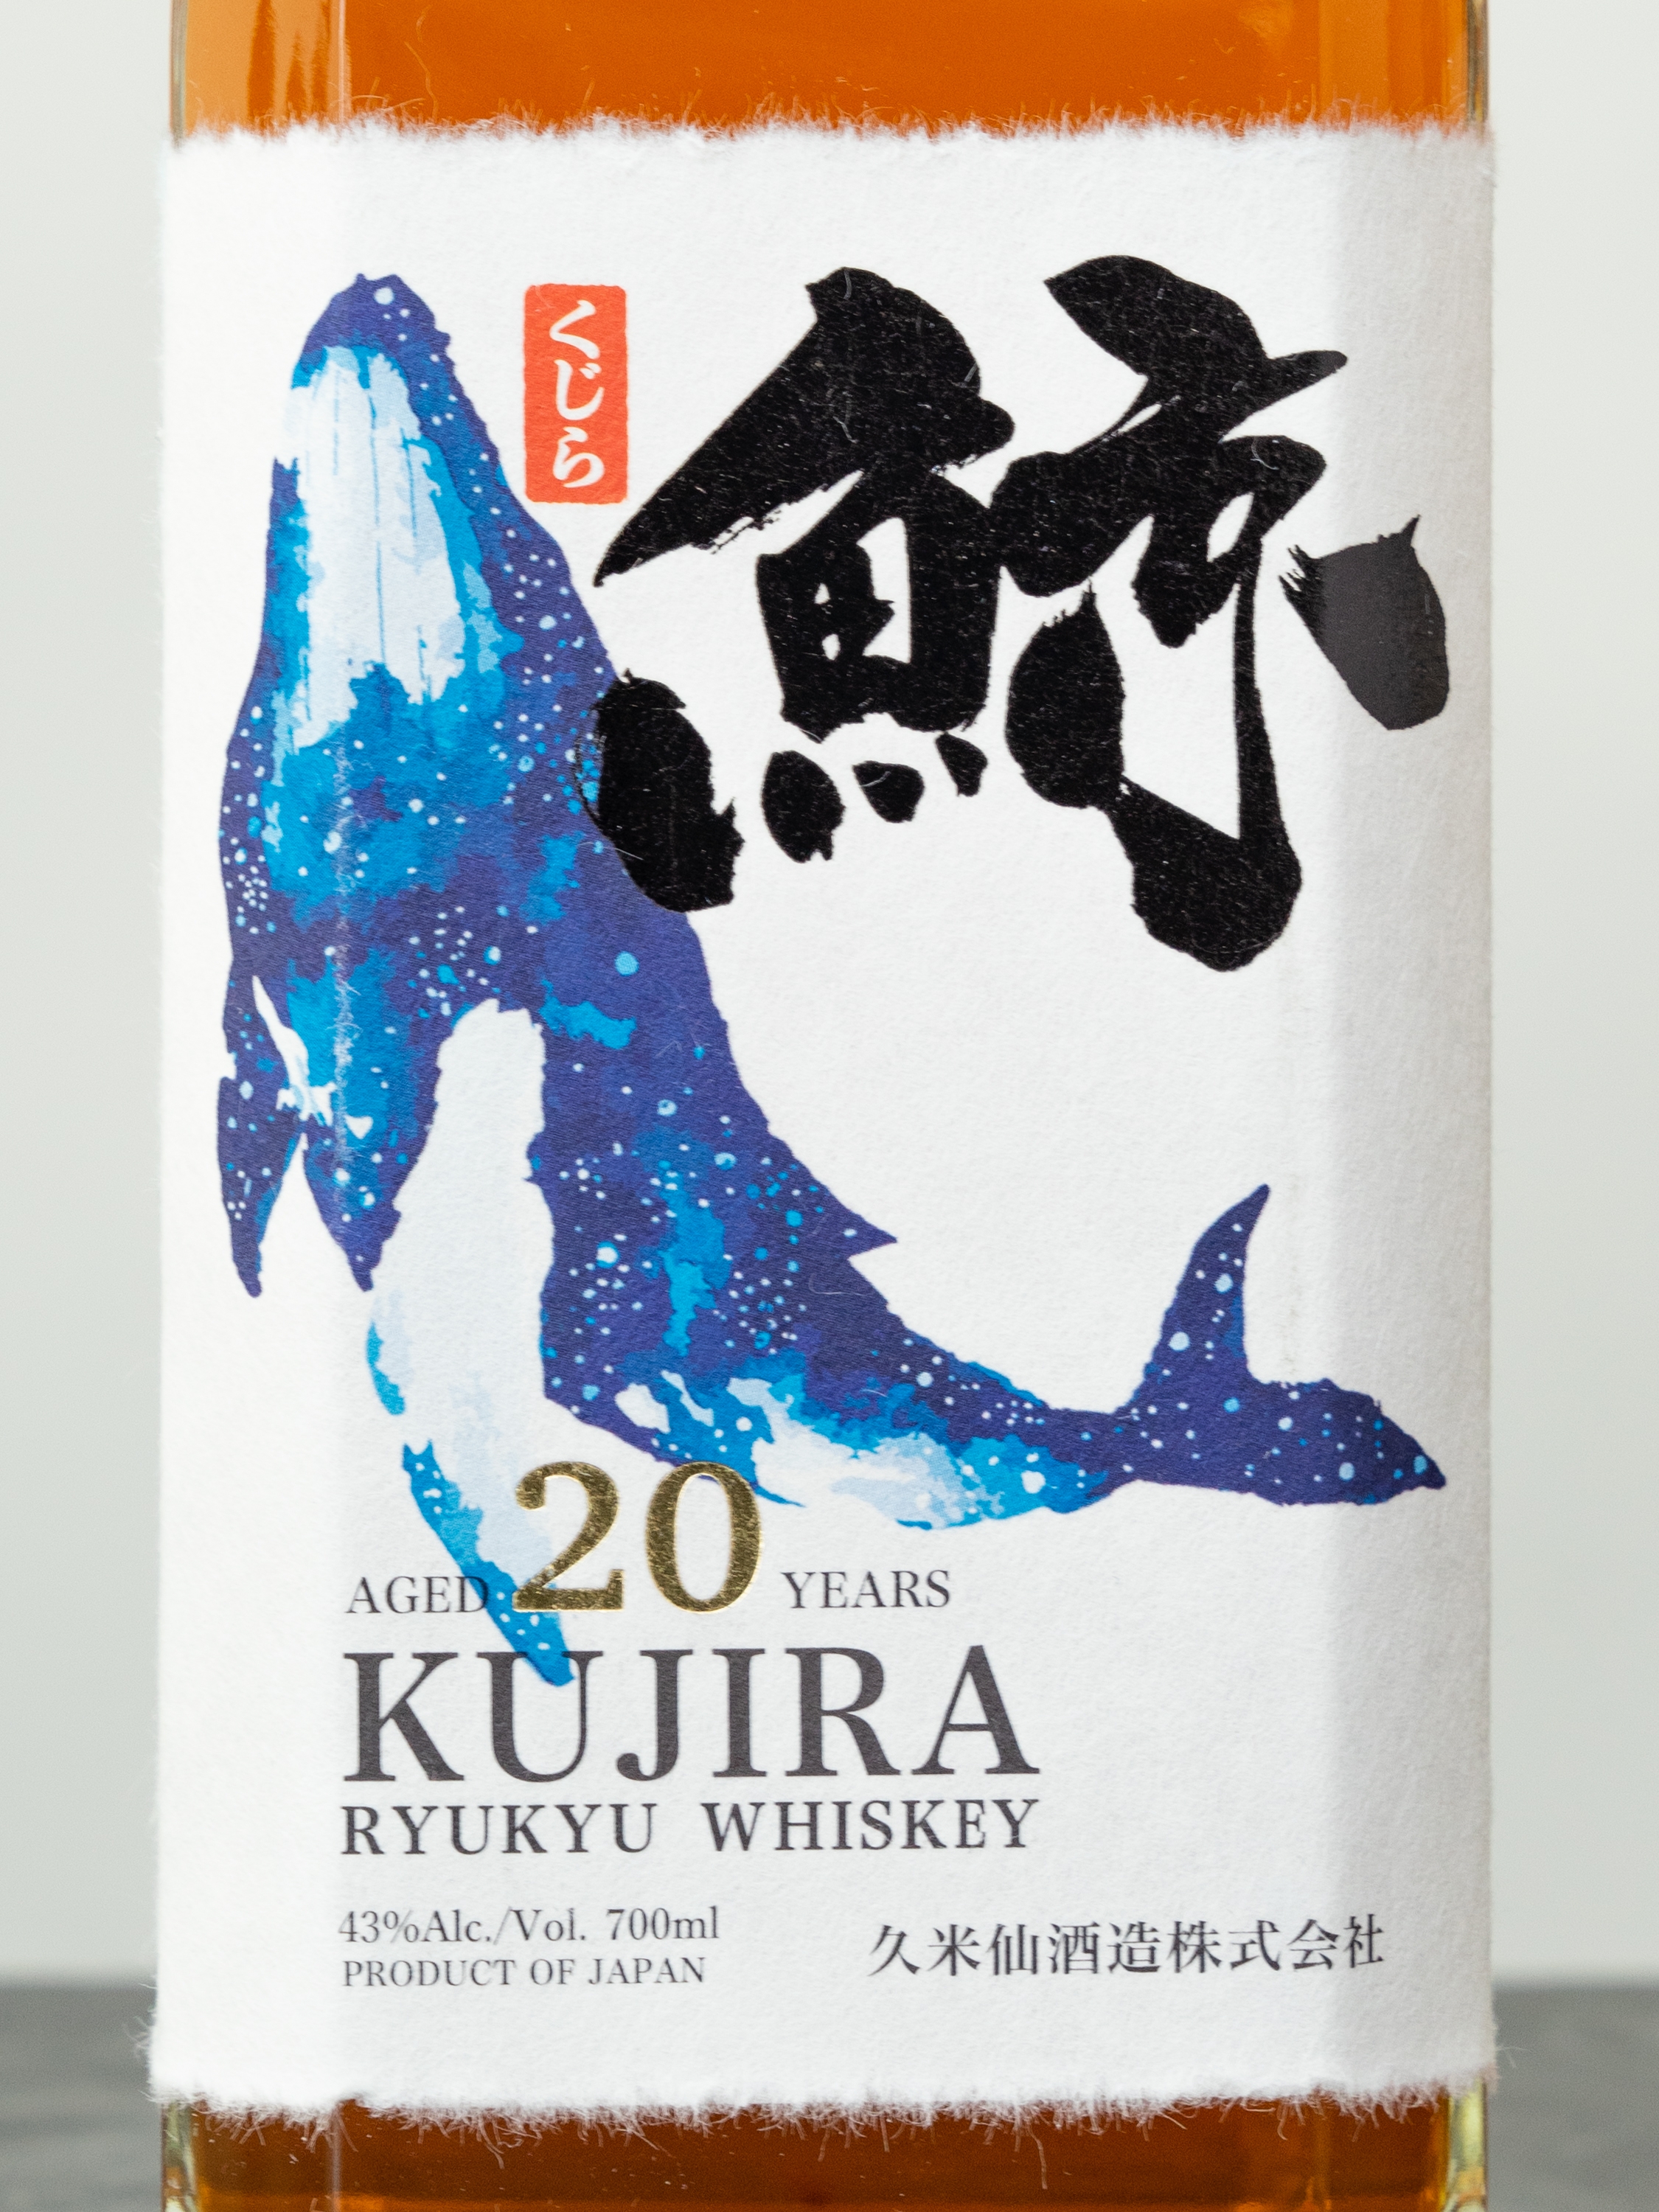 Виски Kujira Sherry & Bourbon Casks 20 years / Кудзира Шерри и Бурбон Каскс  20 лет